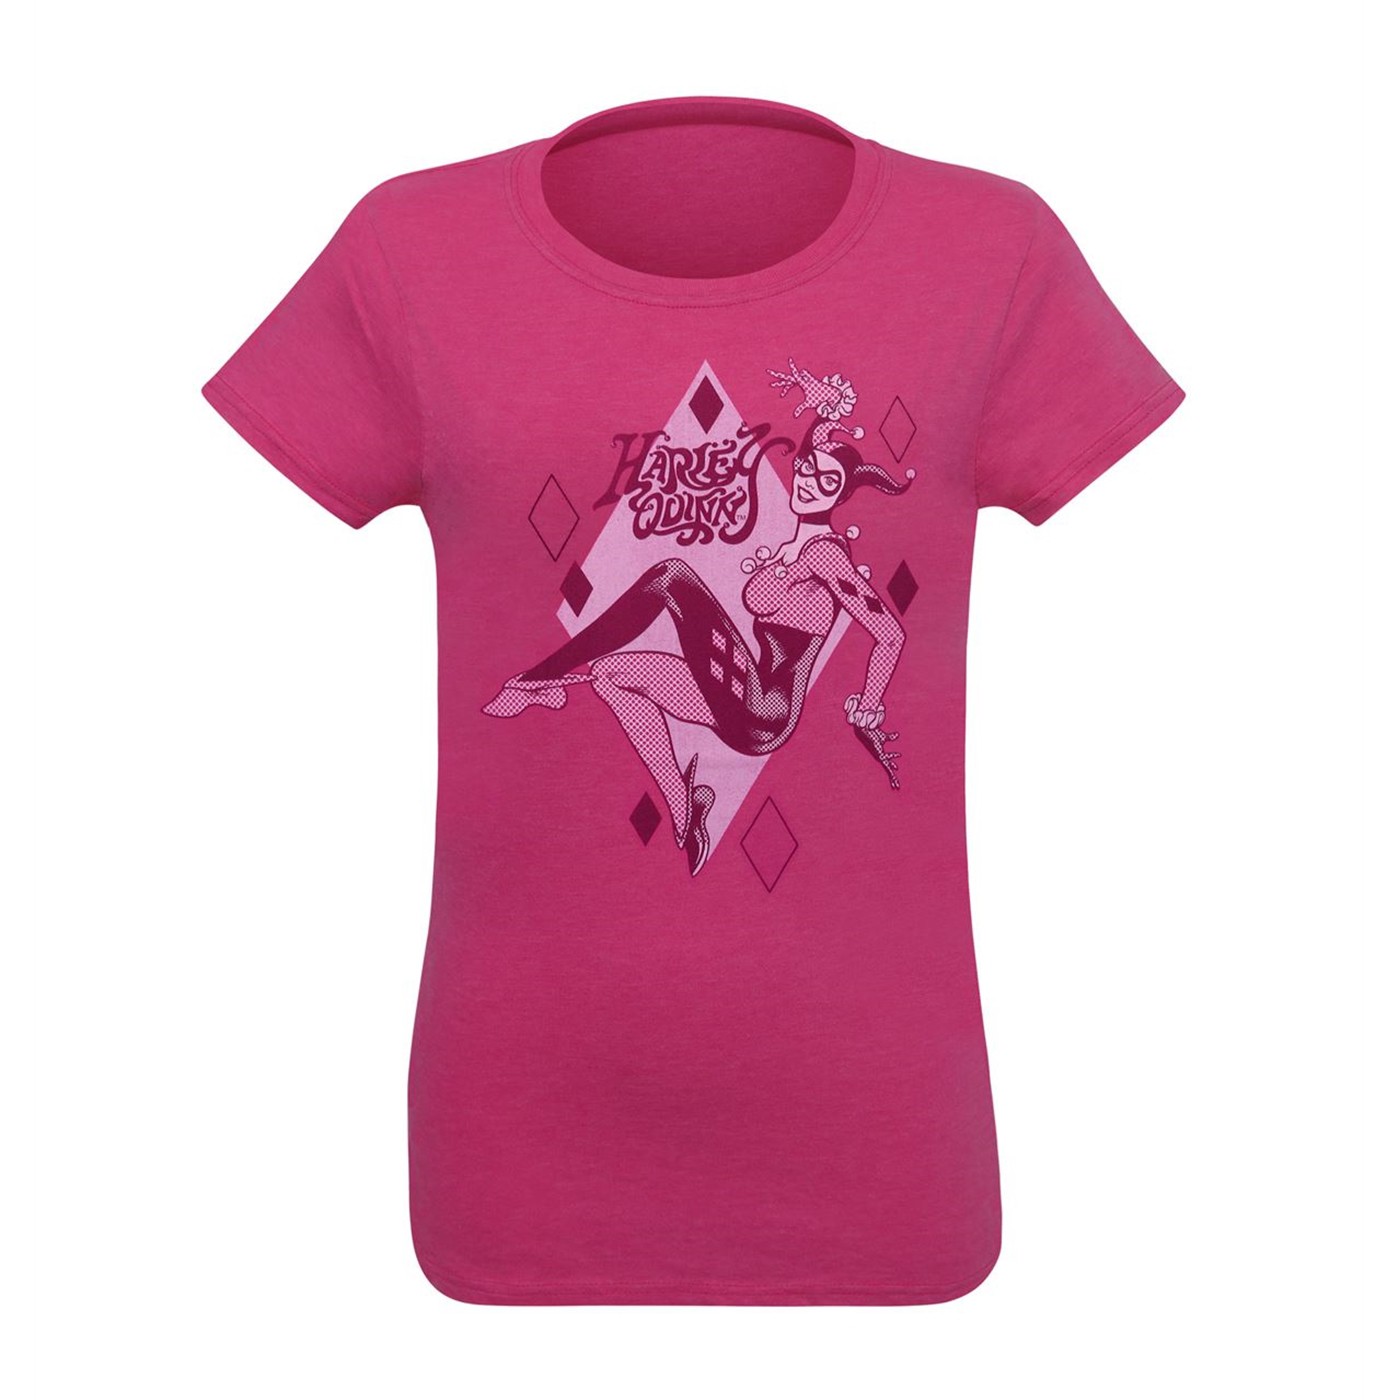 Harley Quinn Pink Women's T-Shirt